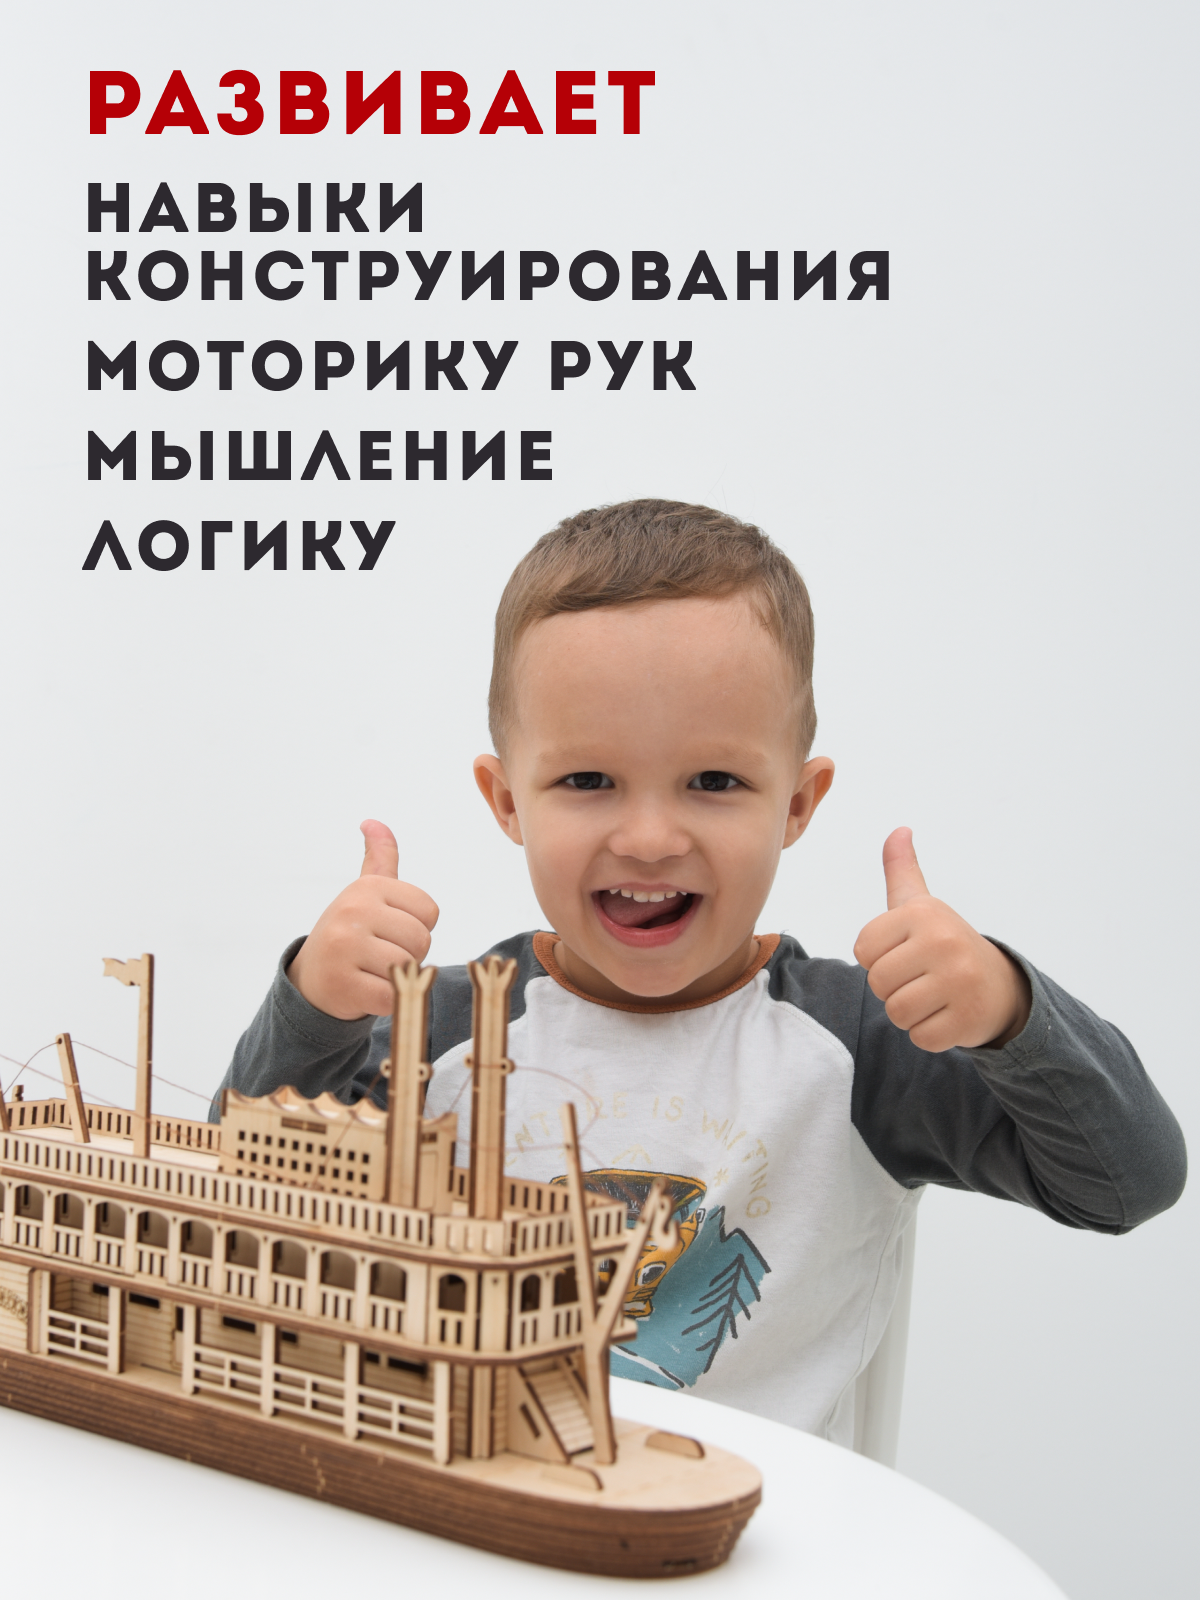 Деревянный конструктор ГРАТ Пароход Western River пароход - фото 3